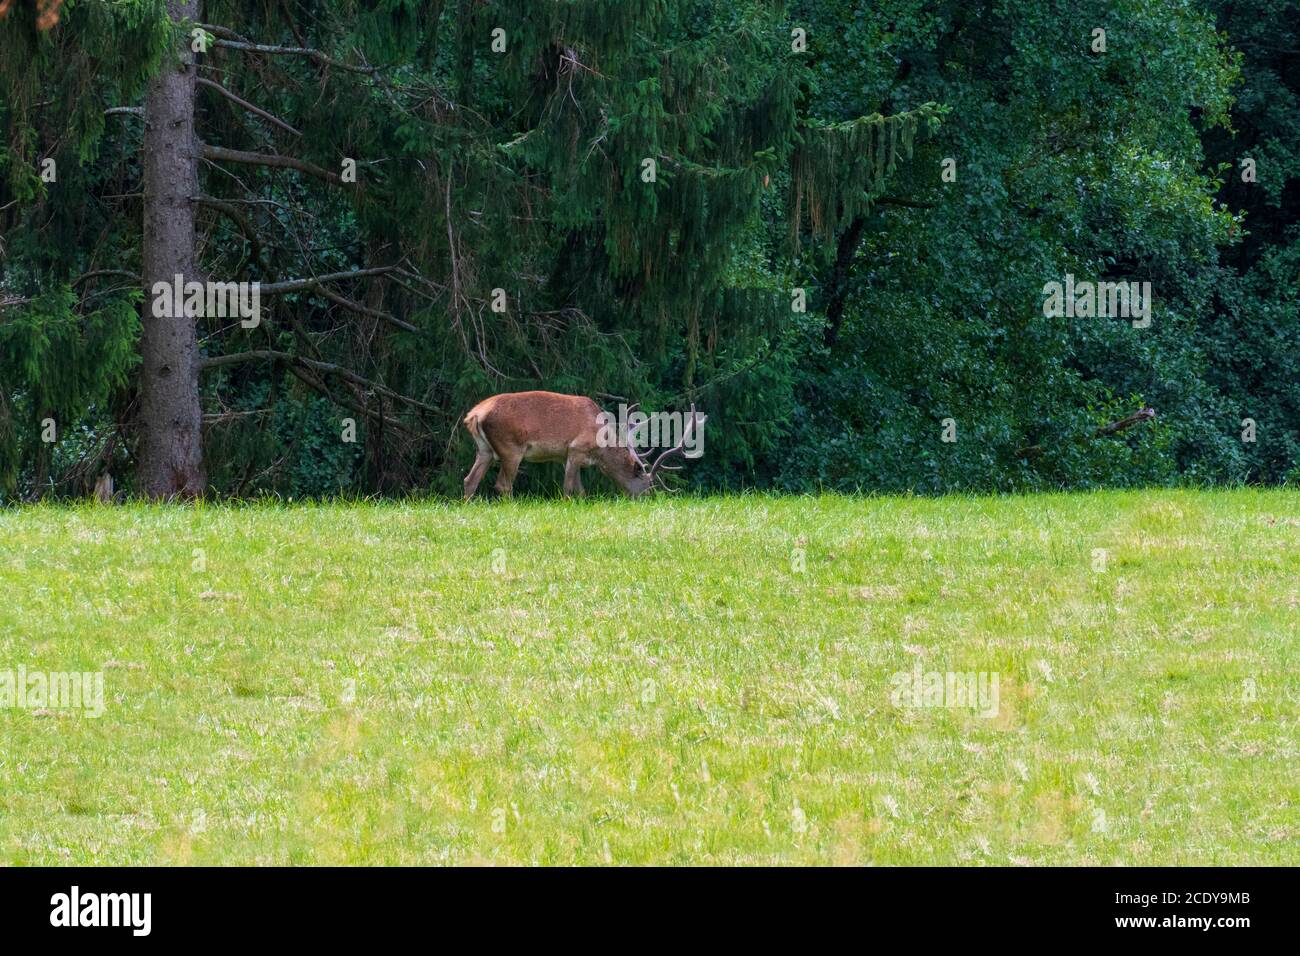 Hirsch auf einer Lichtung im Wald frisst Gras Stock Photo